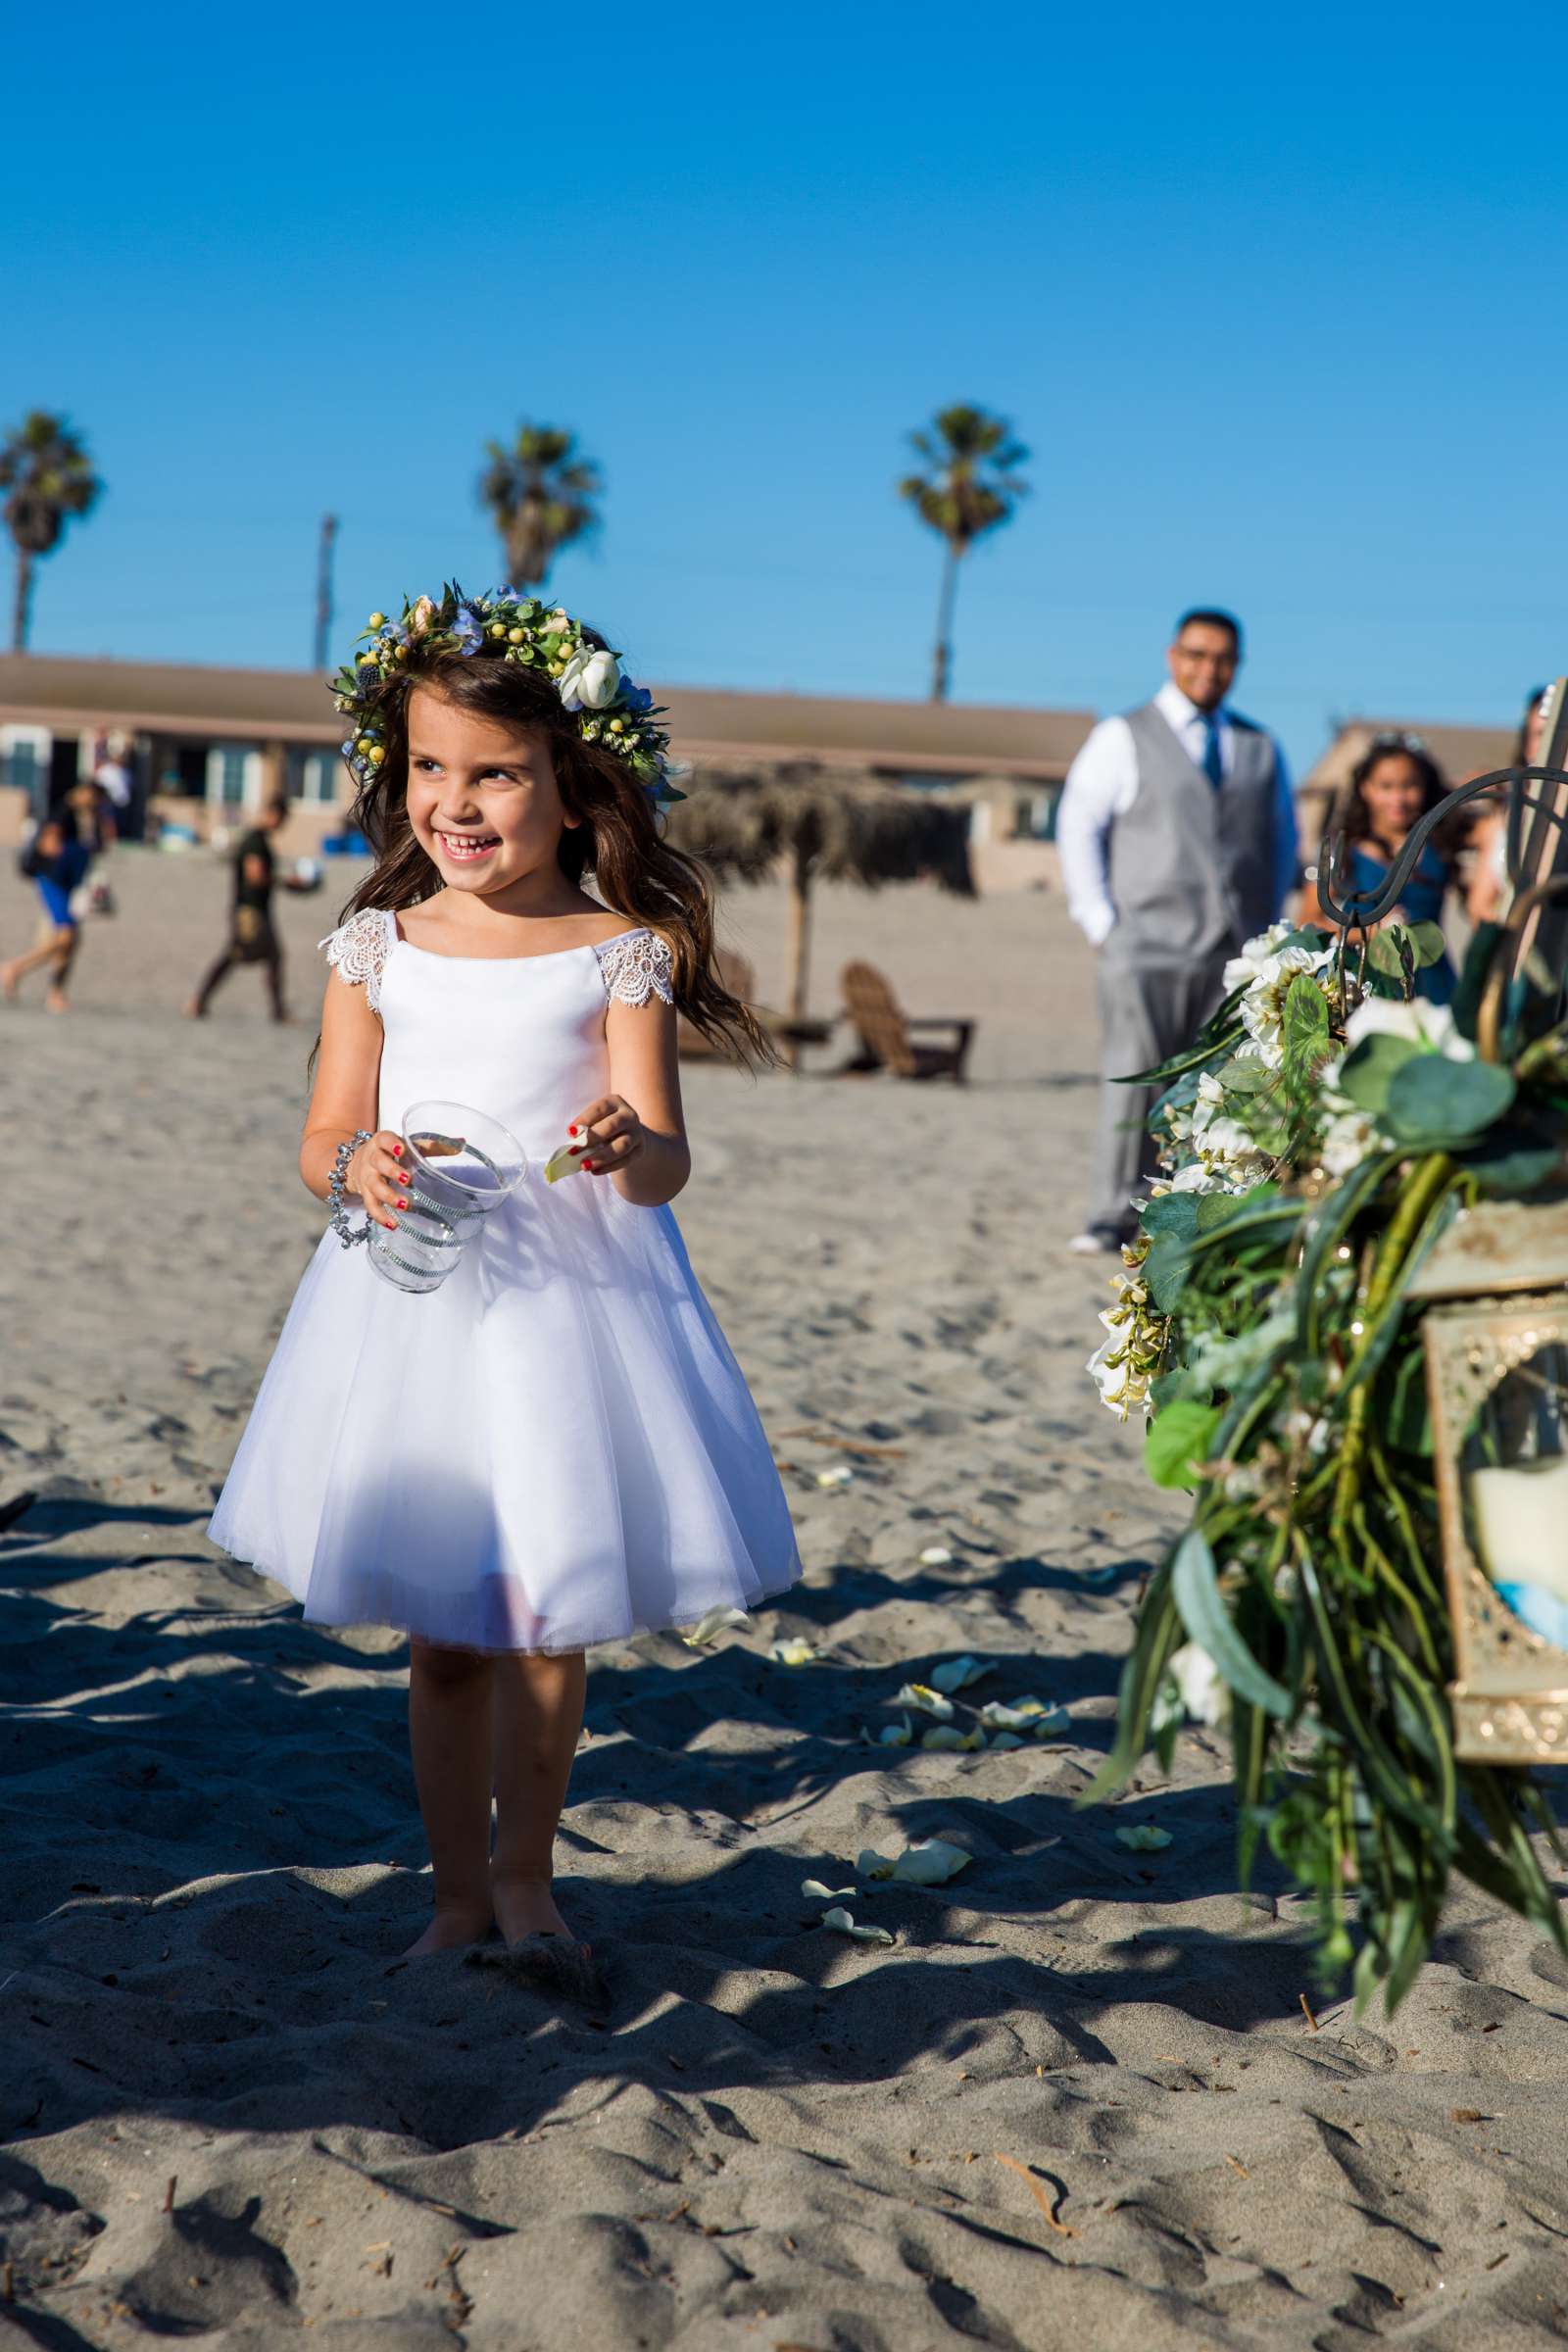 Del Mar Beach Resort Wedding coordinated by La Casa Del Mar, Alisa and Carlos Wedding Photo #380880 by True Photography